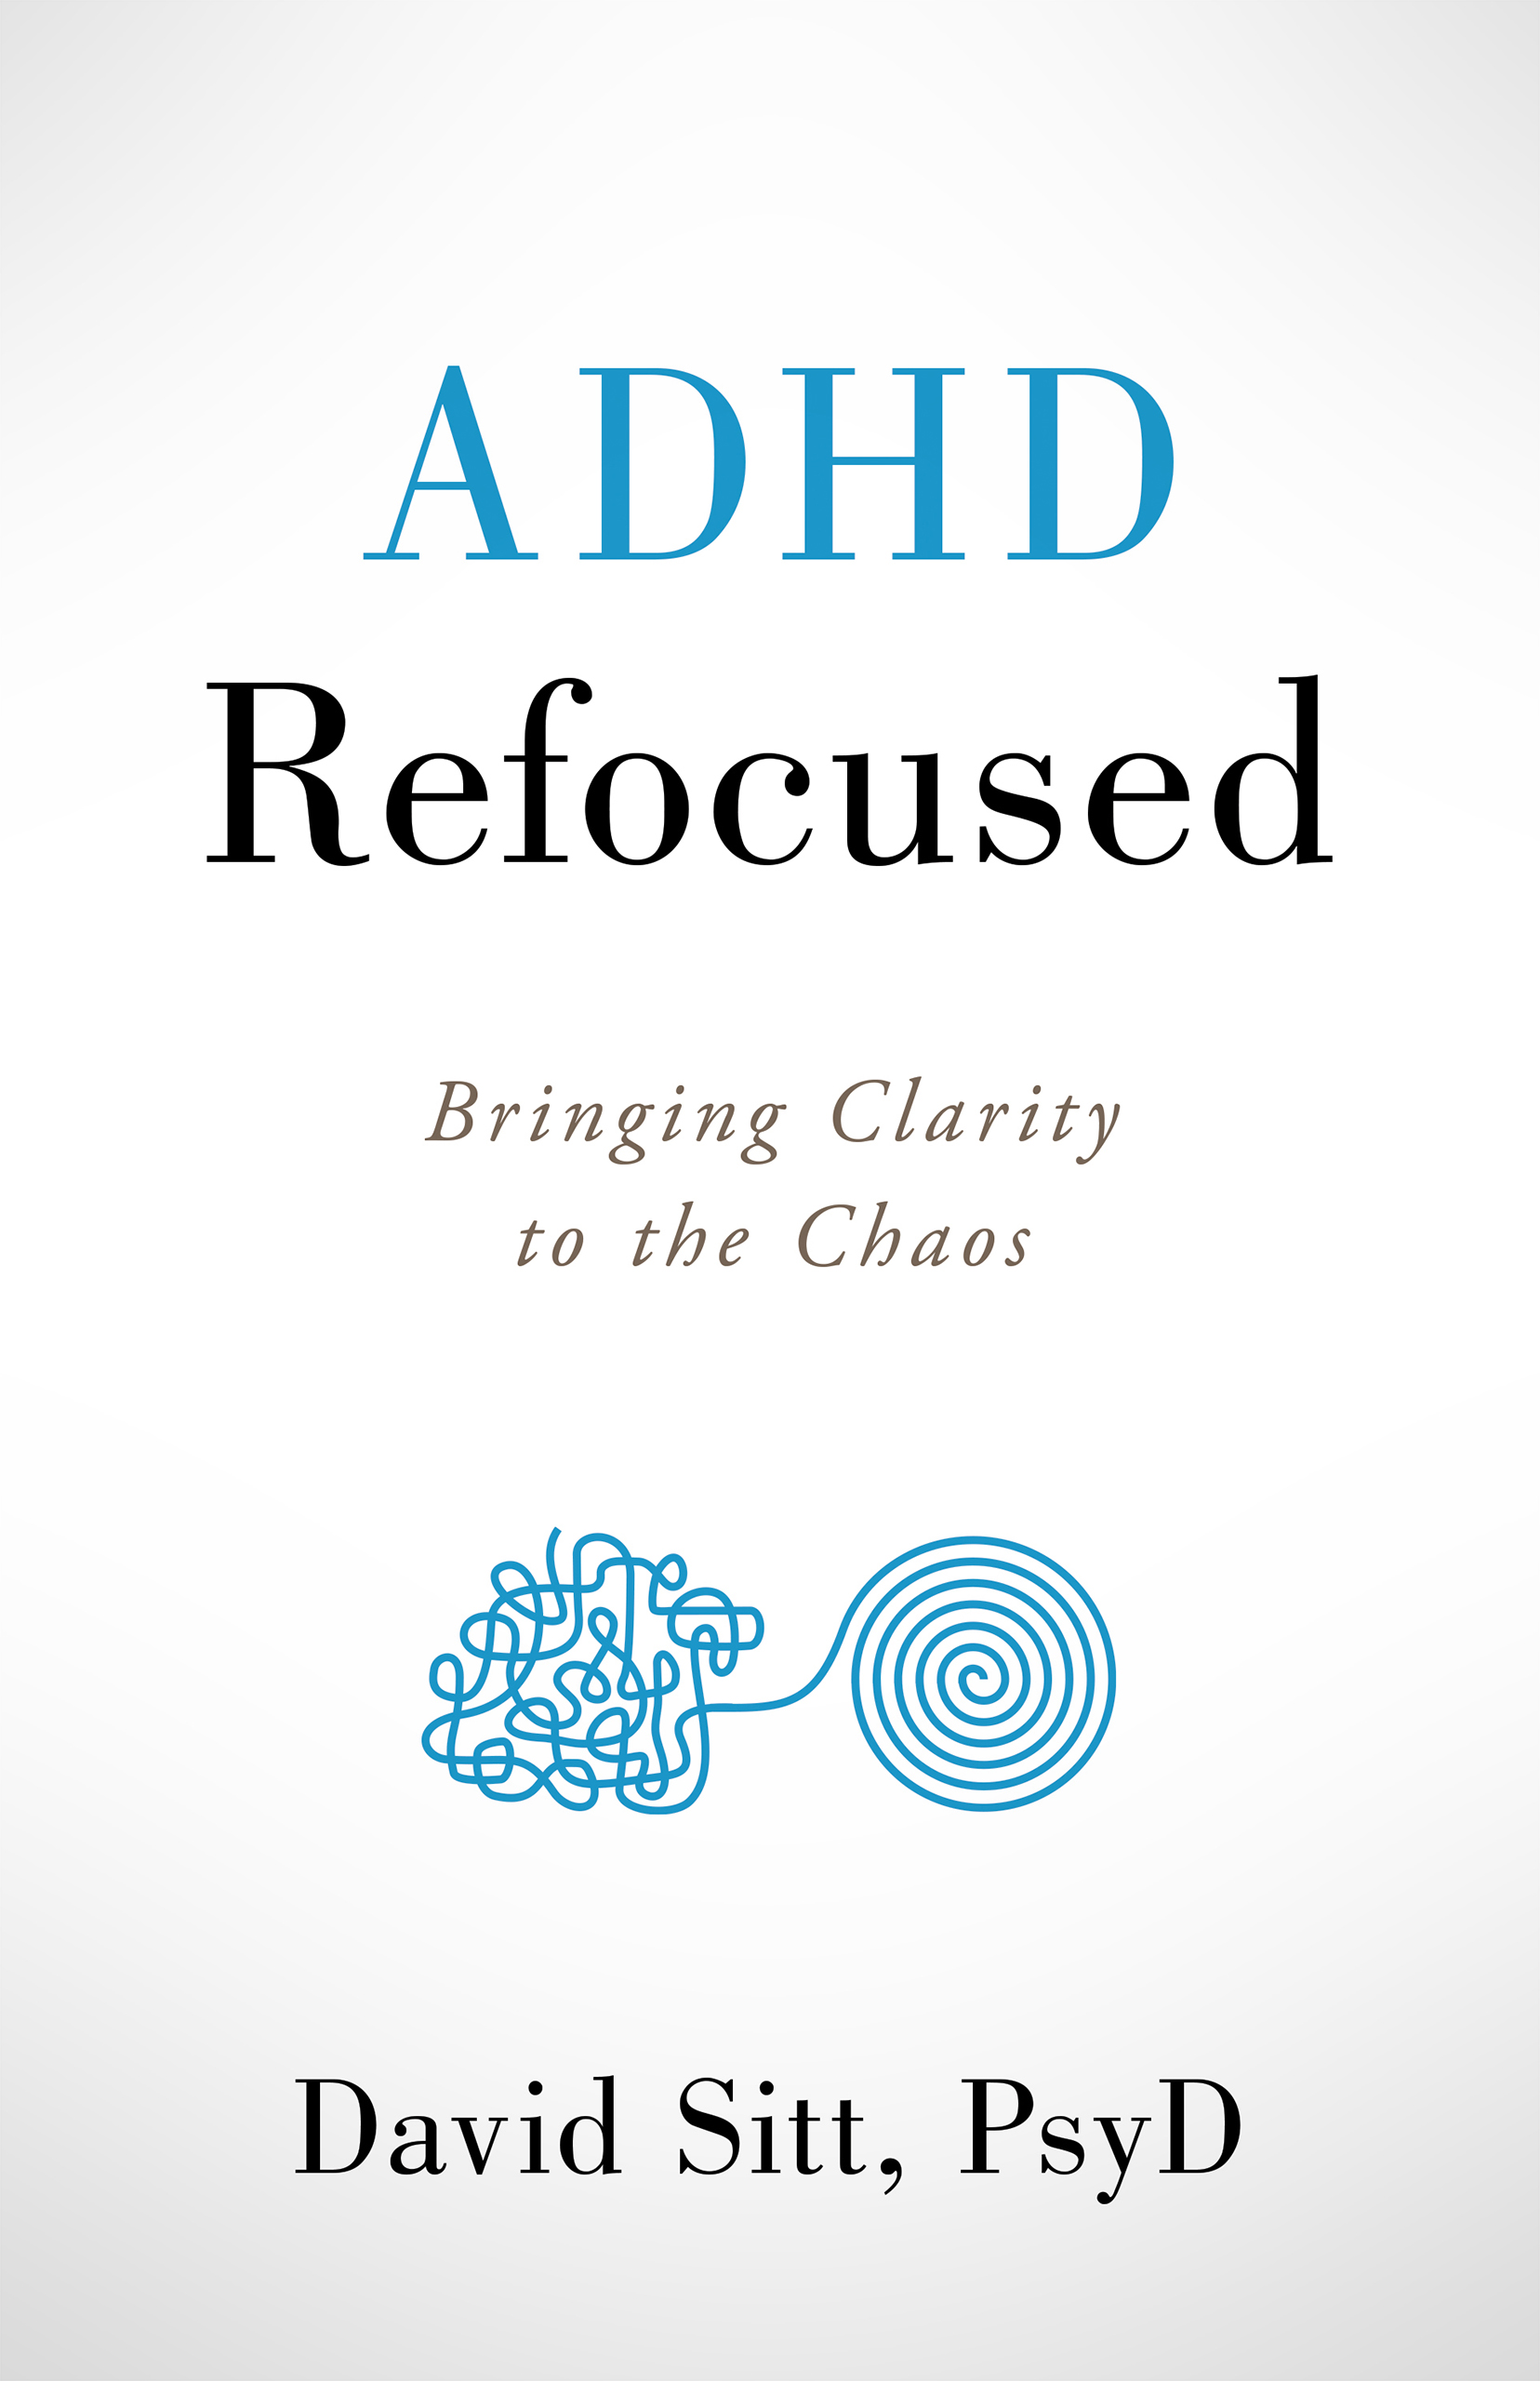 ADHD Refocused